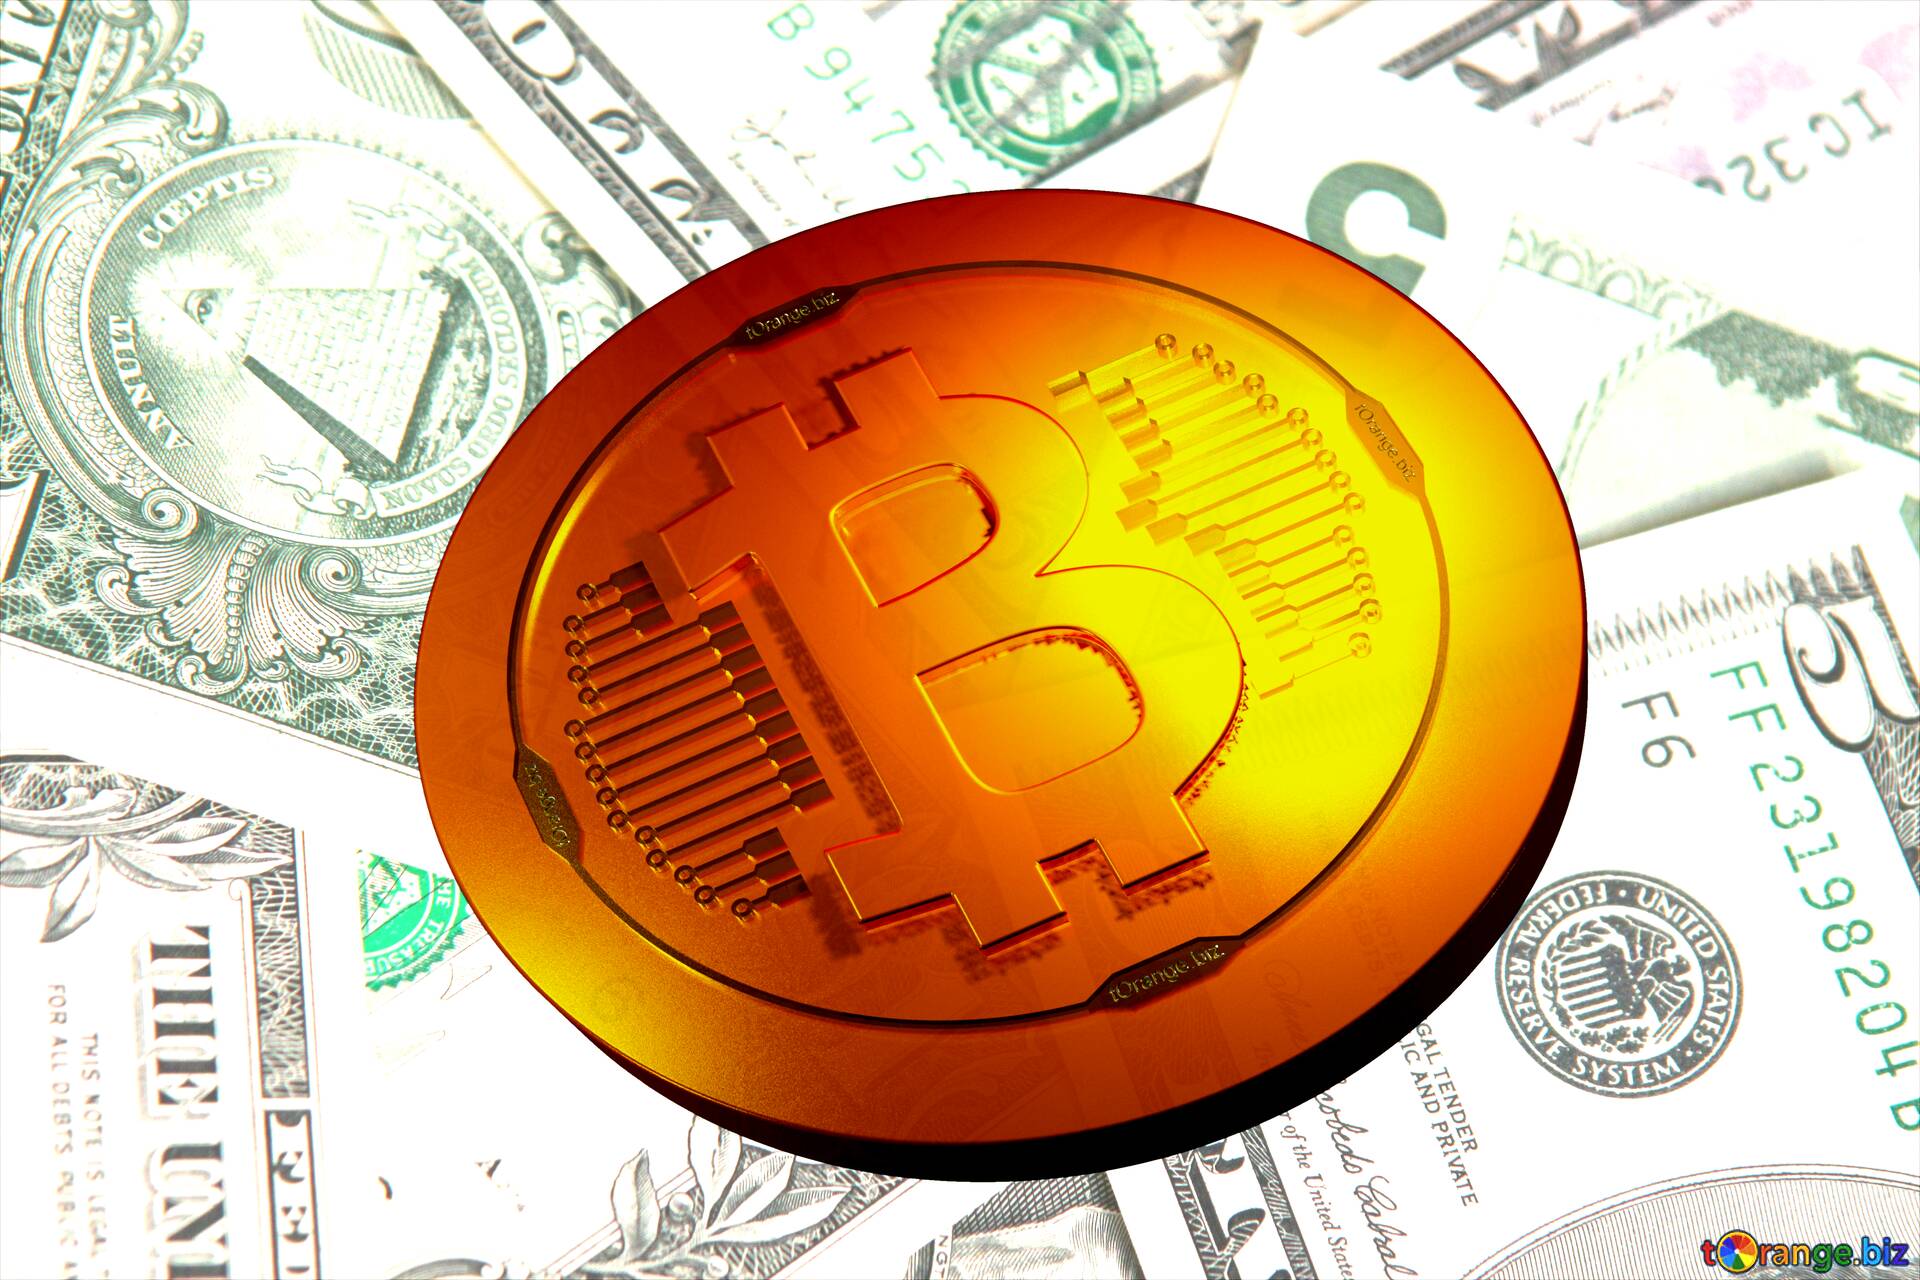 Bitcoin gold light coin - những sản phẩm tài chính tiềm năng cho tương lai! Bạn muốn tìm hiểu về những cơ hội đầu tư đầy tiềm năng, đặc biệt là các sản phẩm tài chính như Bitcoin gold hay light coin? Hãy xem ngay hình ảnh liên quan để tìm hiểu thêm về sự phát triển và tiềm năng của các sản phẩm này trong tương lai.